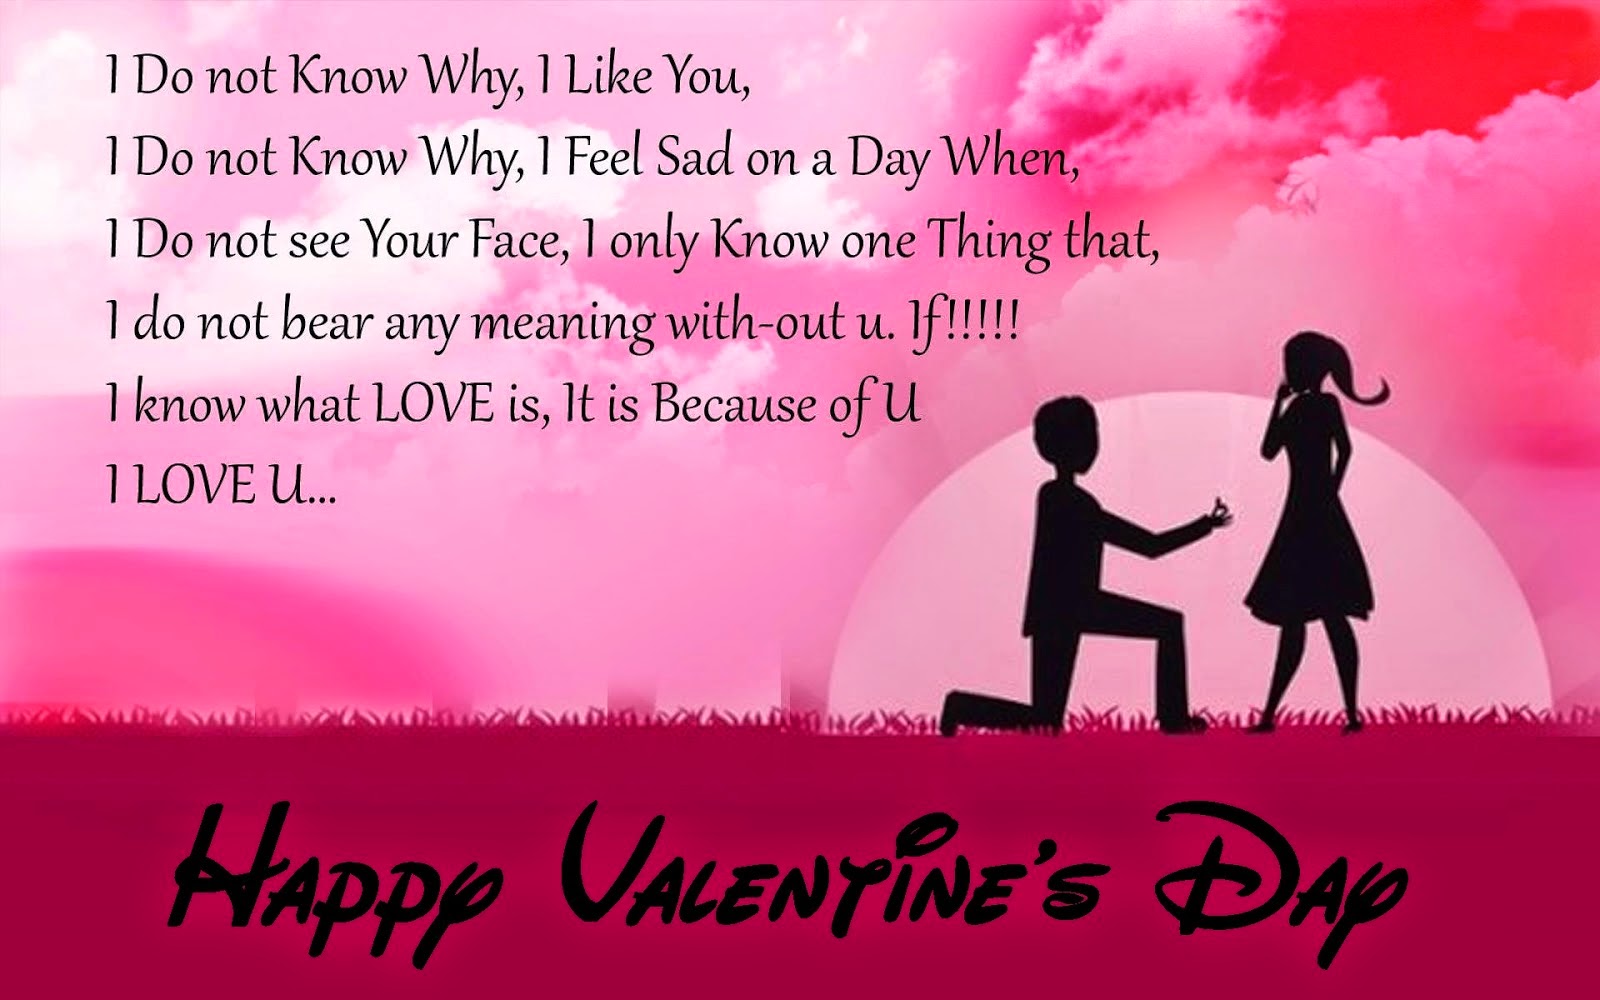 Happy Valentine's Day Quotes